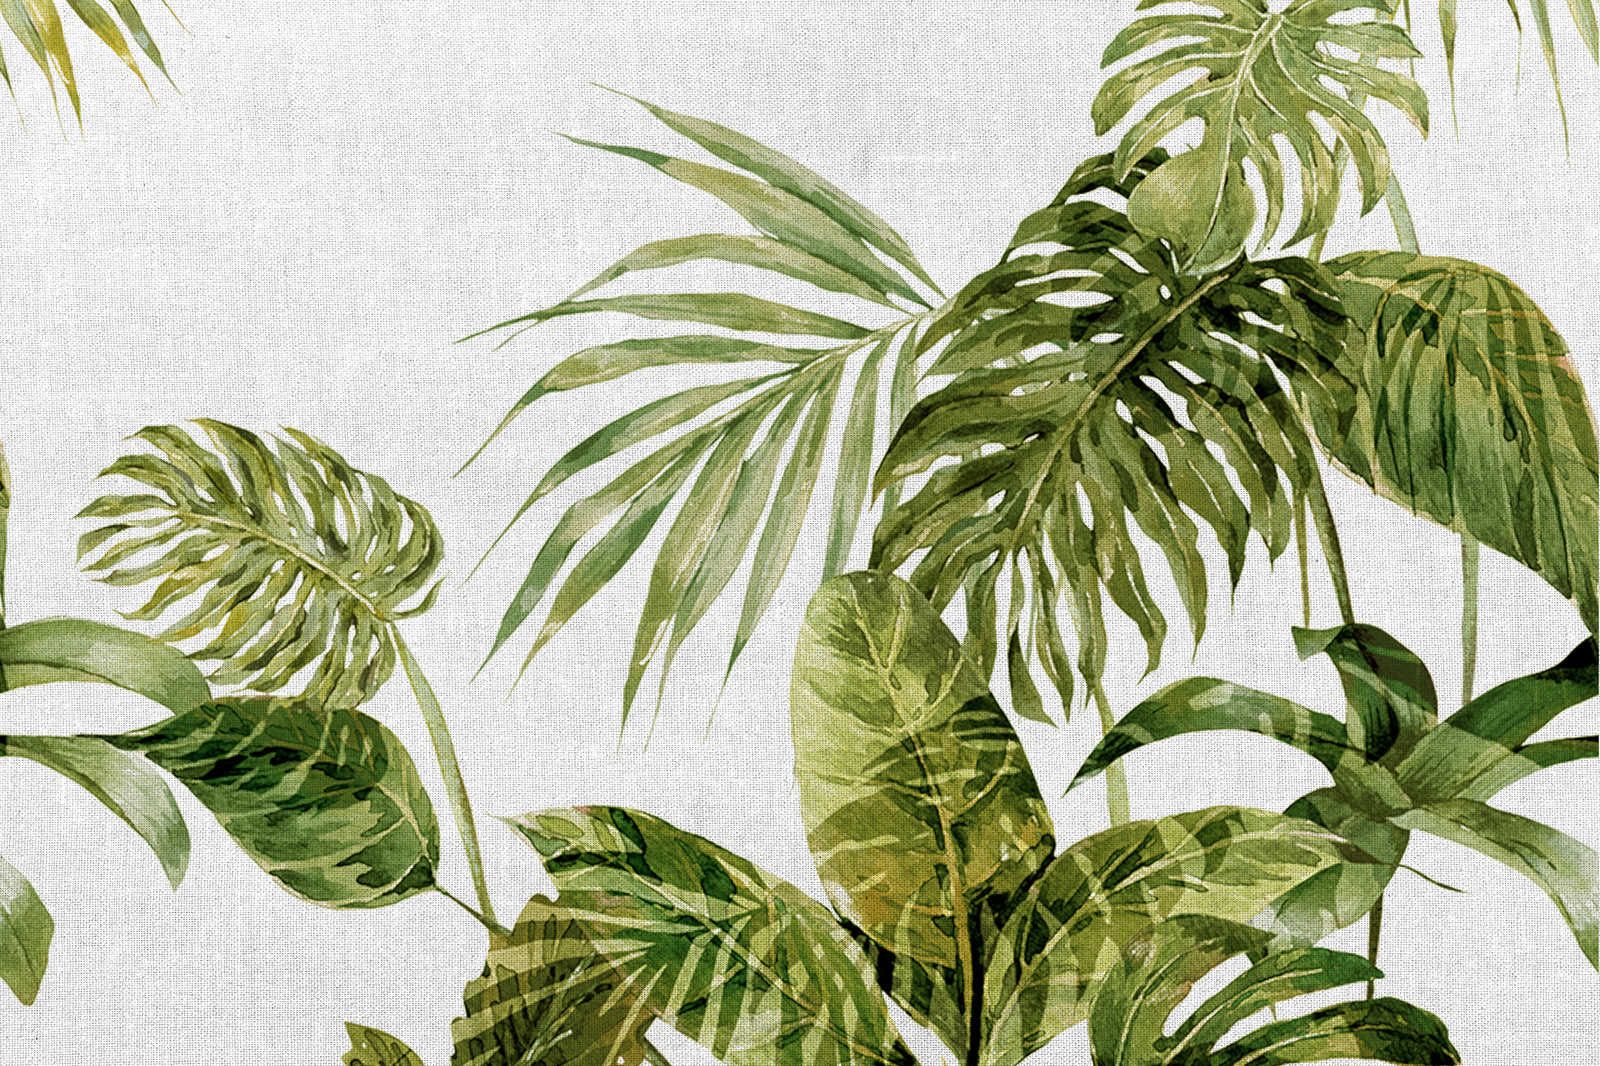             Tela tropicale che dipinge le foglie di Monstera in stile acquerello - 1,20 m x 0,80 m
        